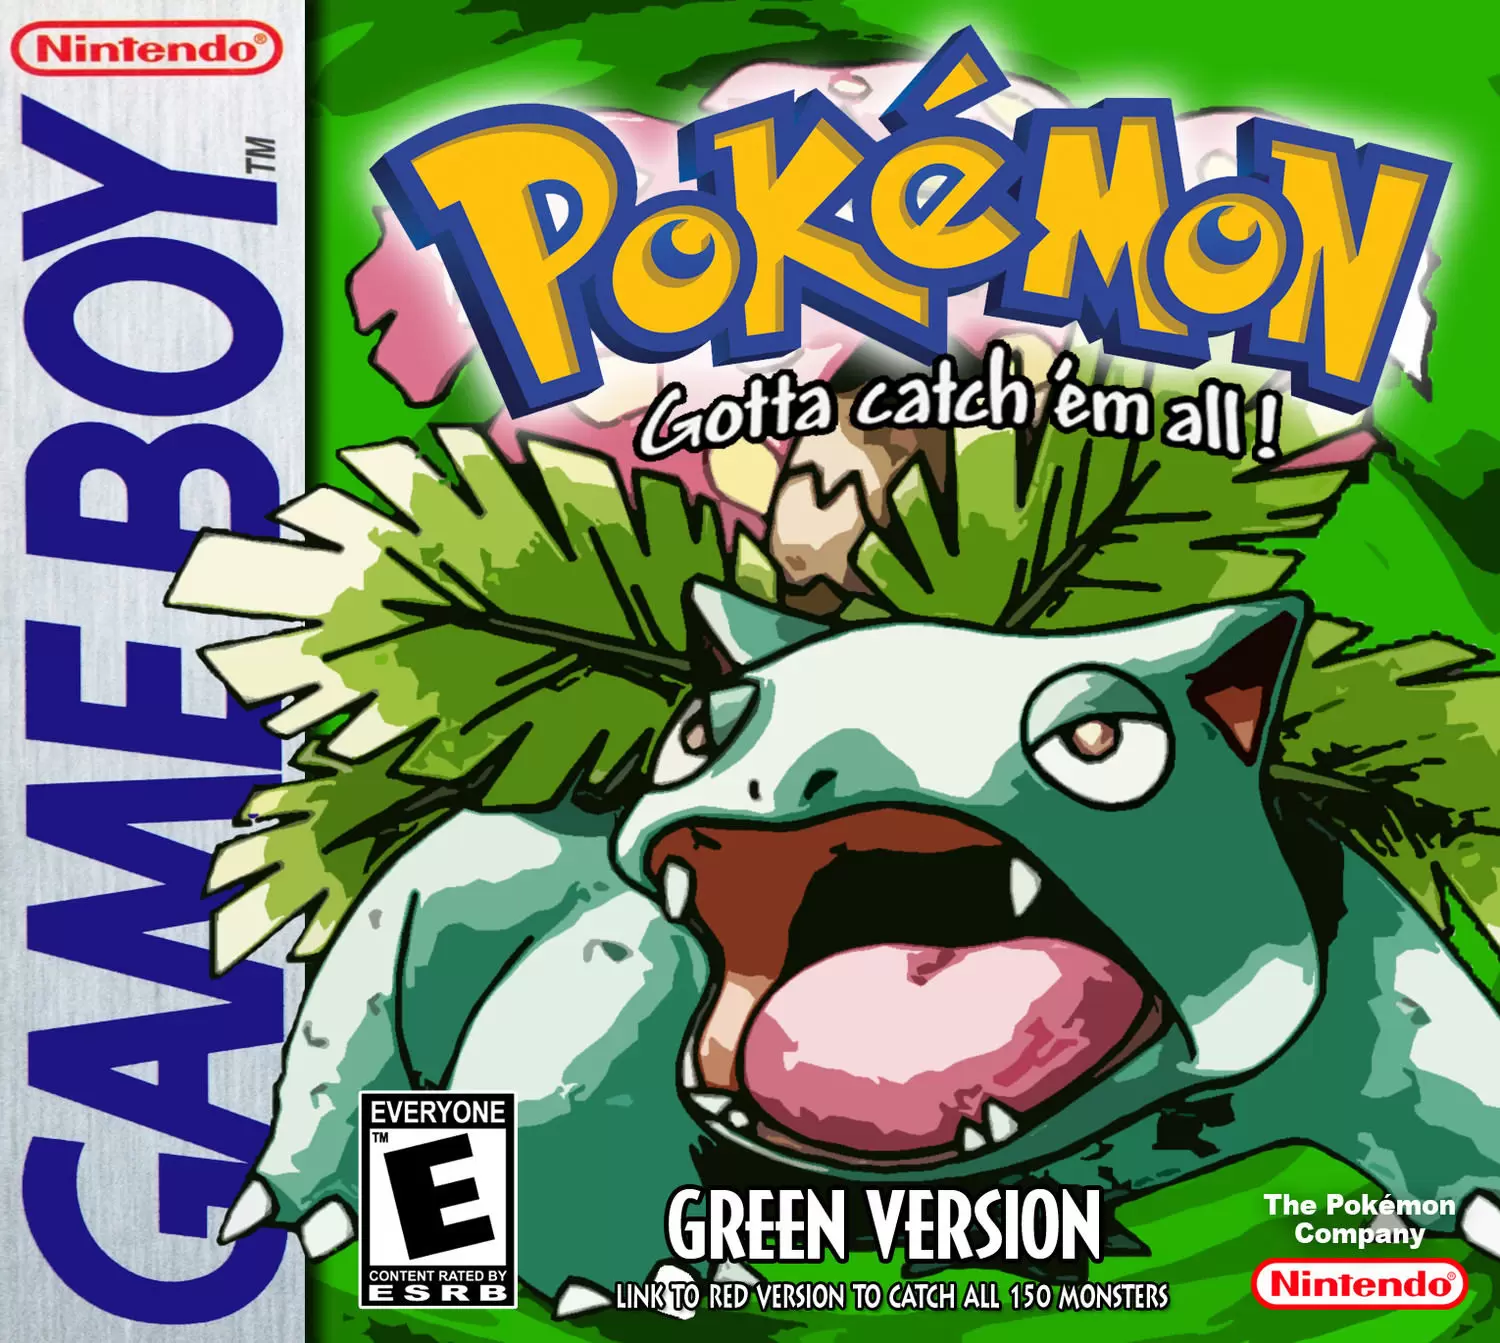 Game Boy Games - Pokémon Green Version